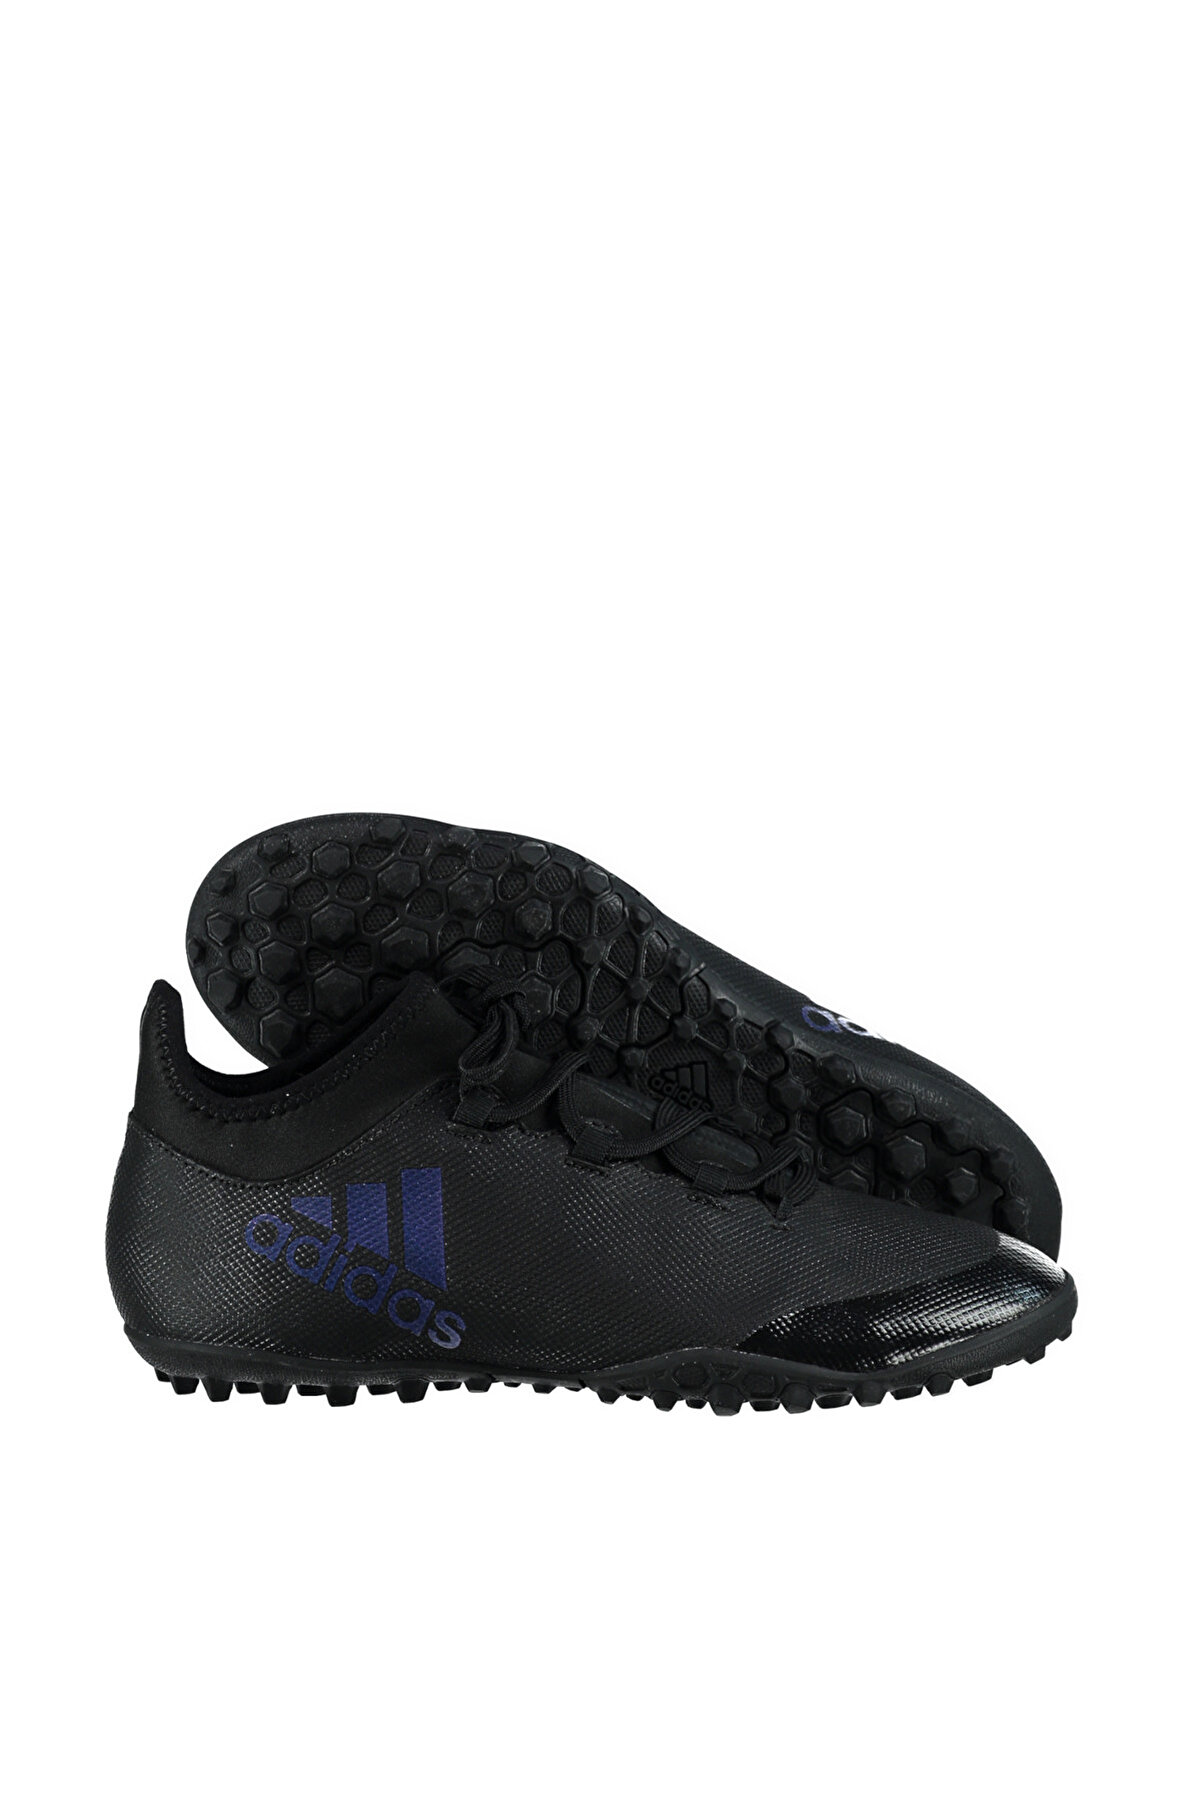 adidas Erkek Halı Saha Ayakkabı - X TANGO 17.3 TF - CG3726